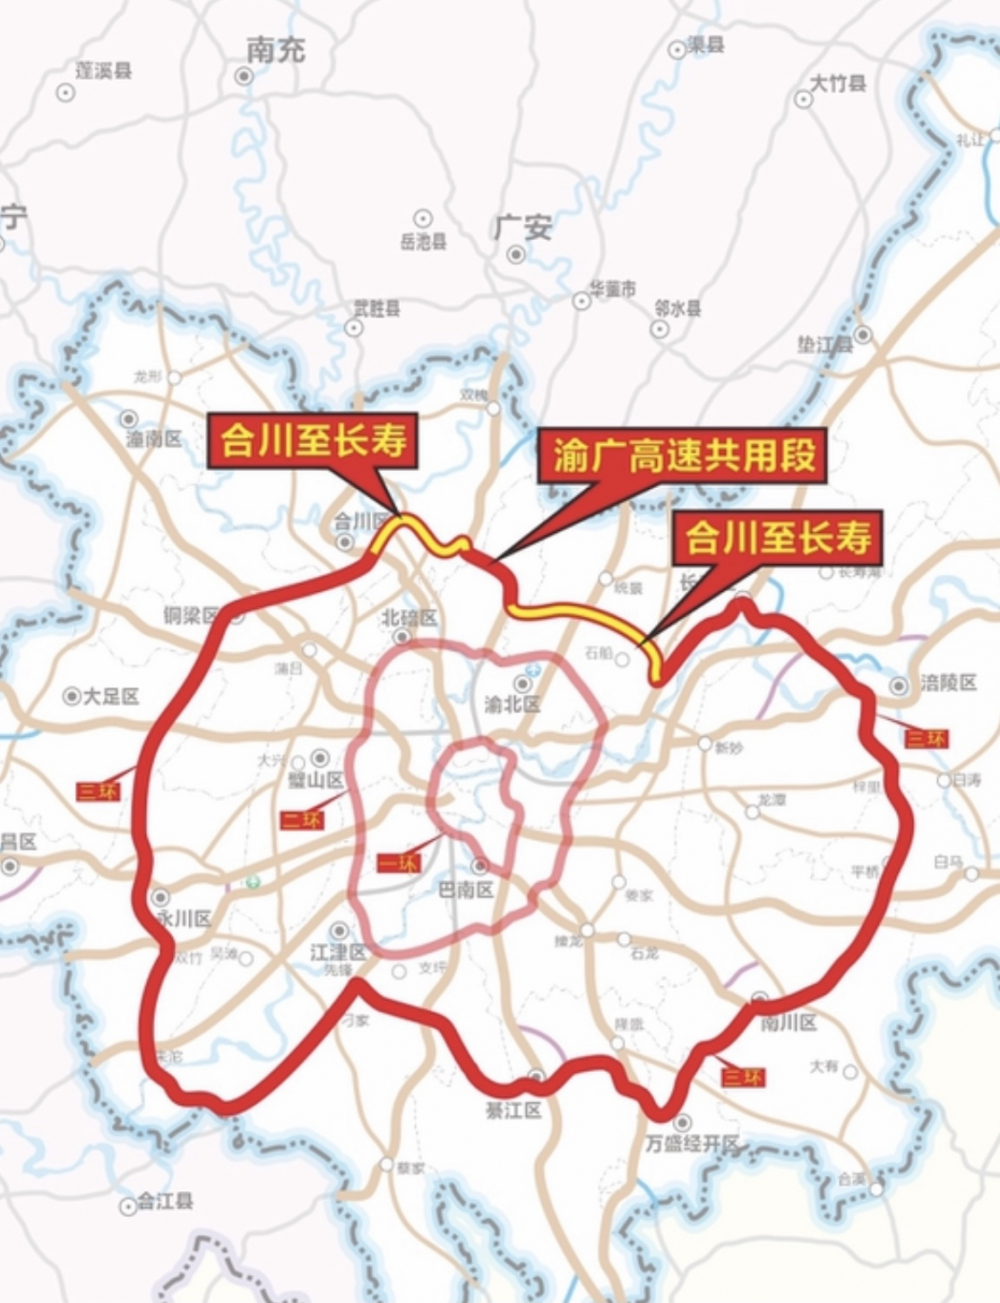 合长高速建成通车 重庆主城都市区进入“三环时代”